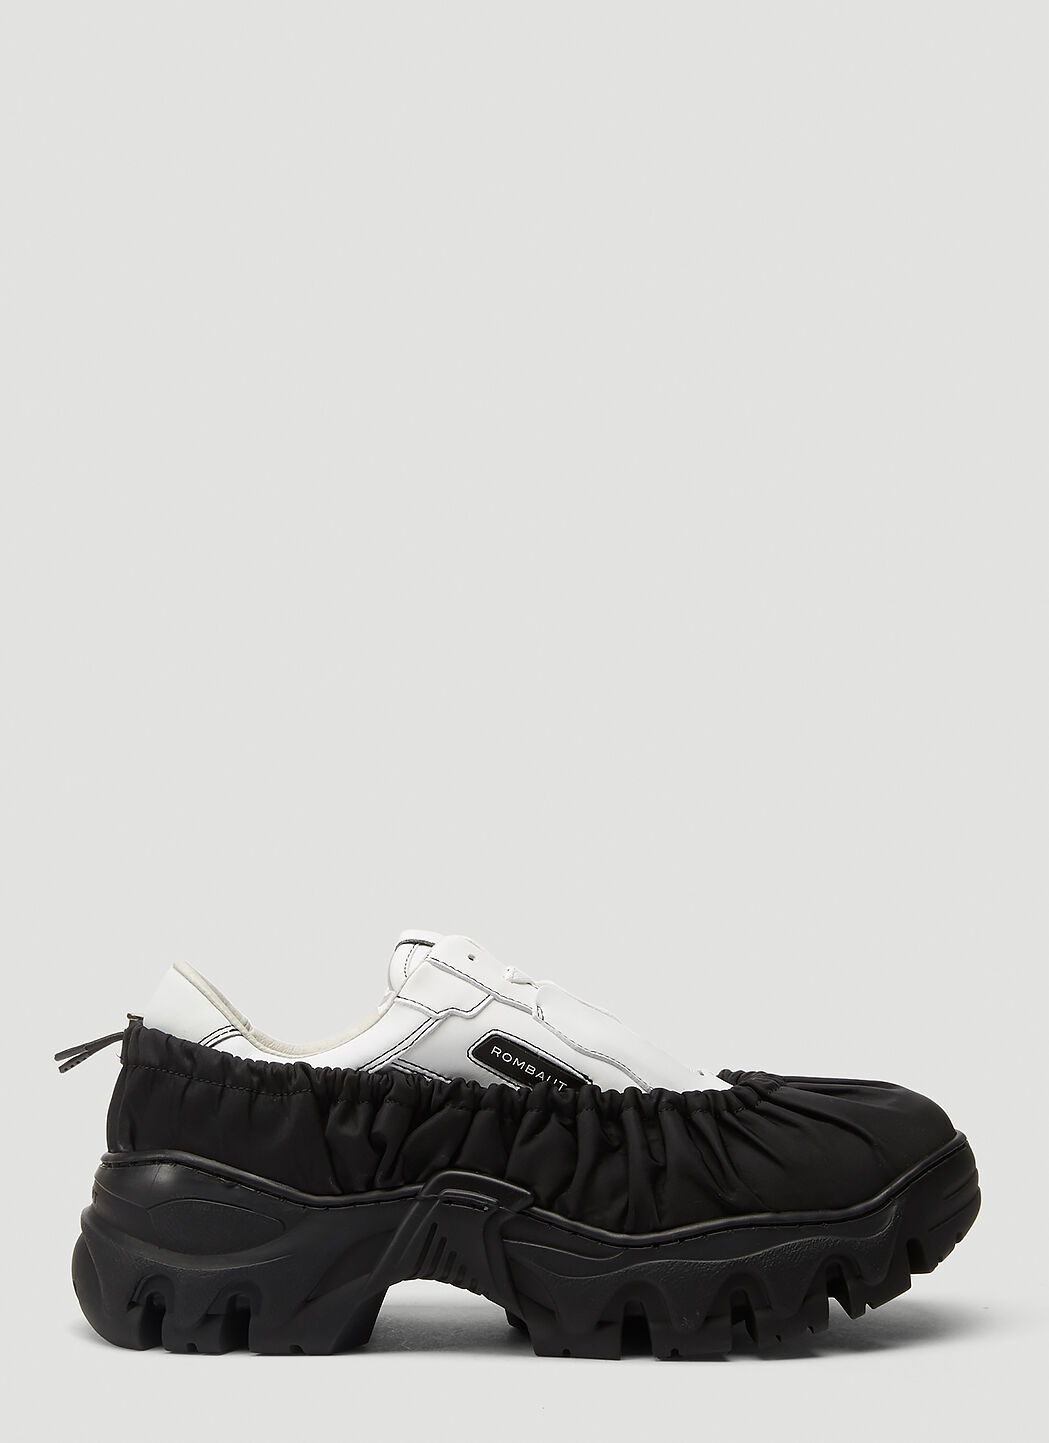 Rombaut Boccaccio II Future Nylon Bag Sneakers Black rmb0354001